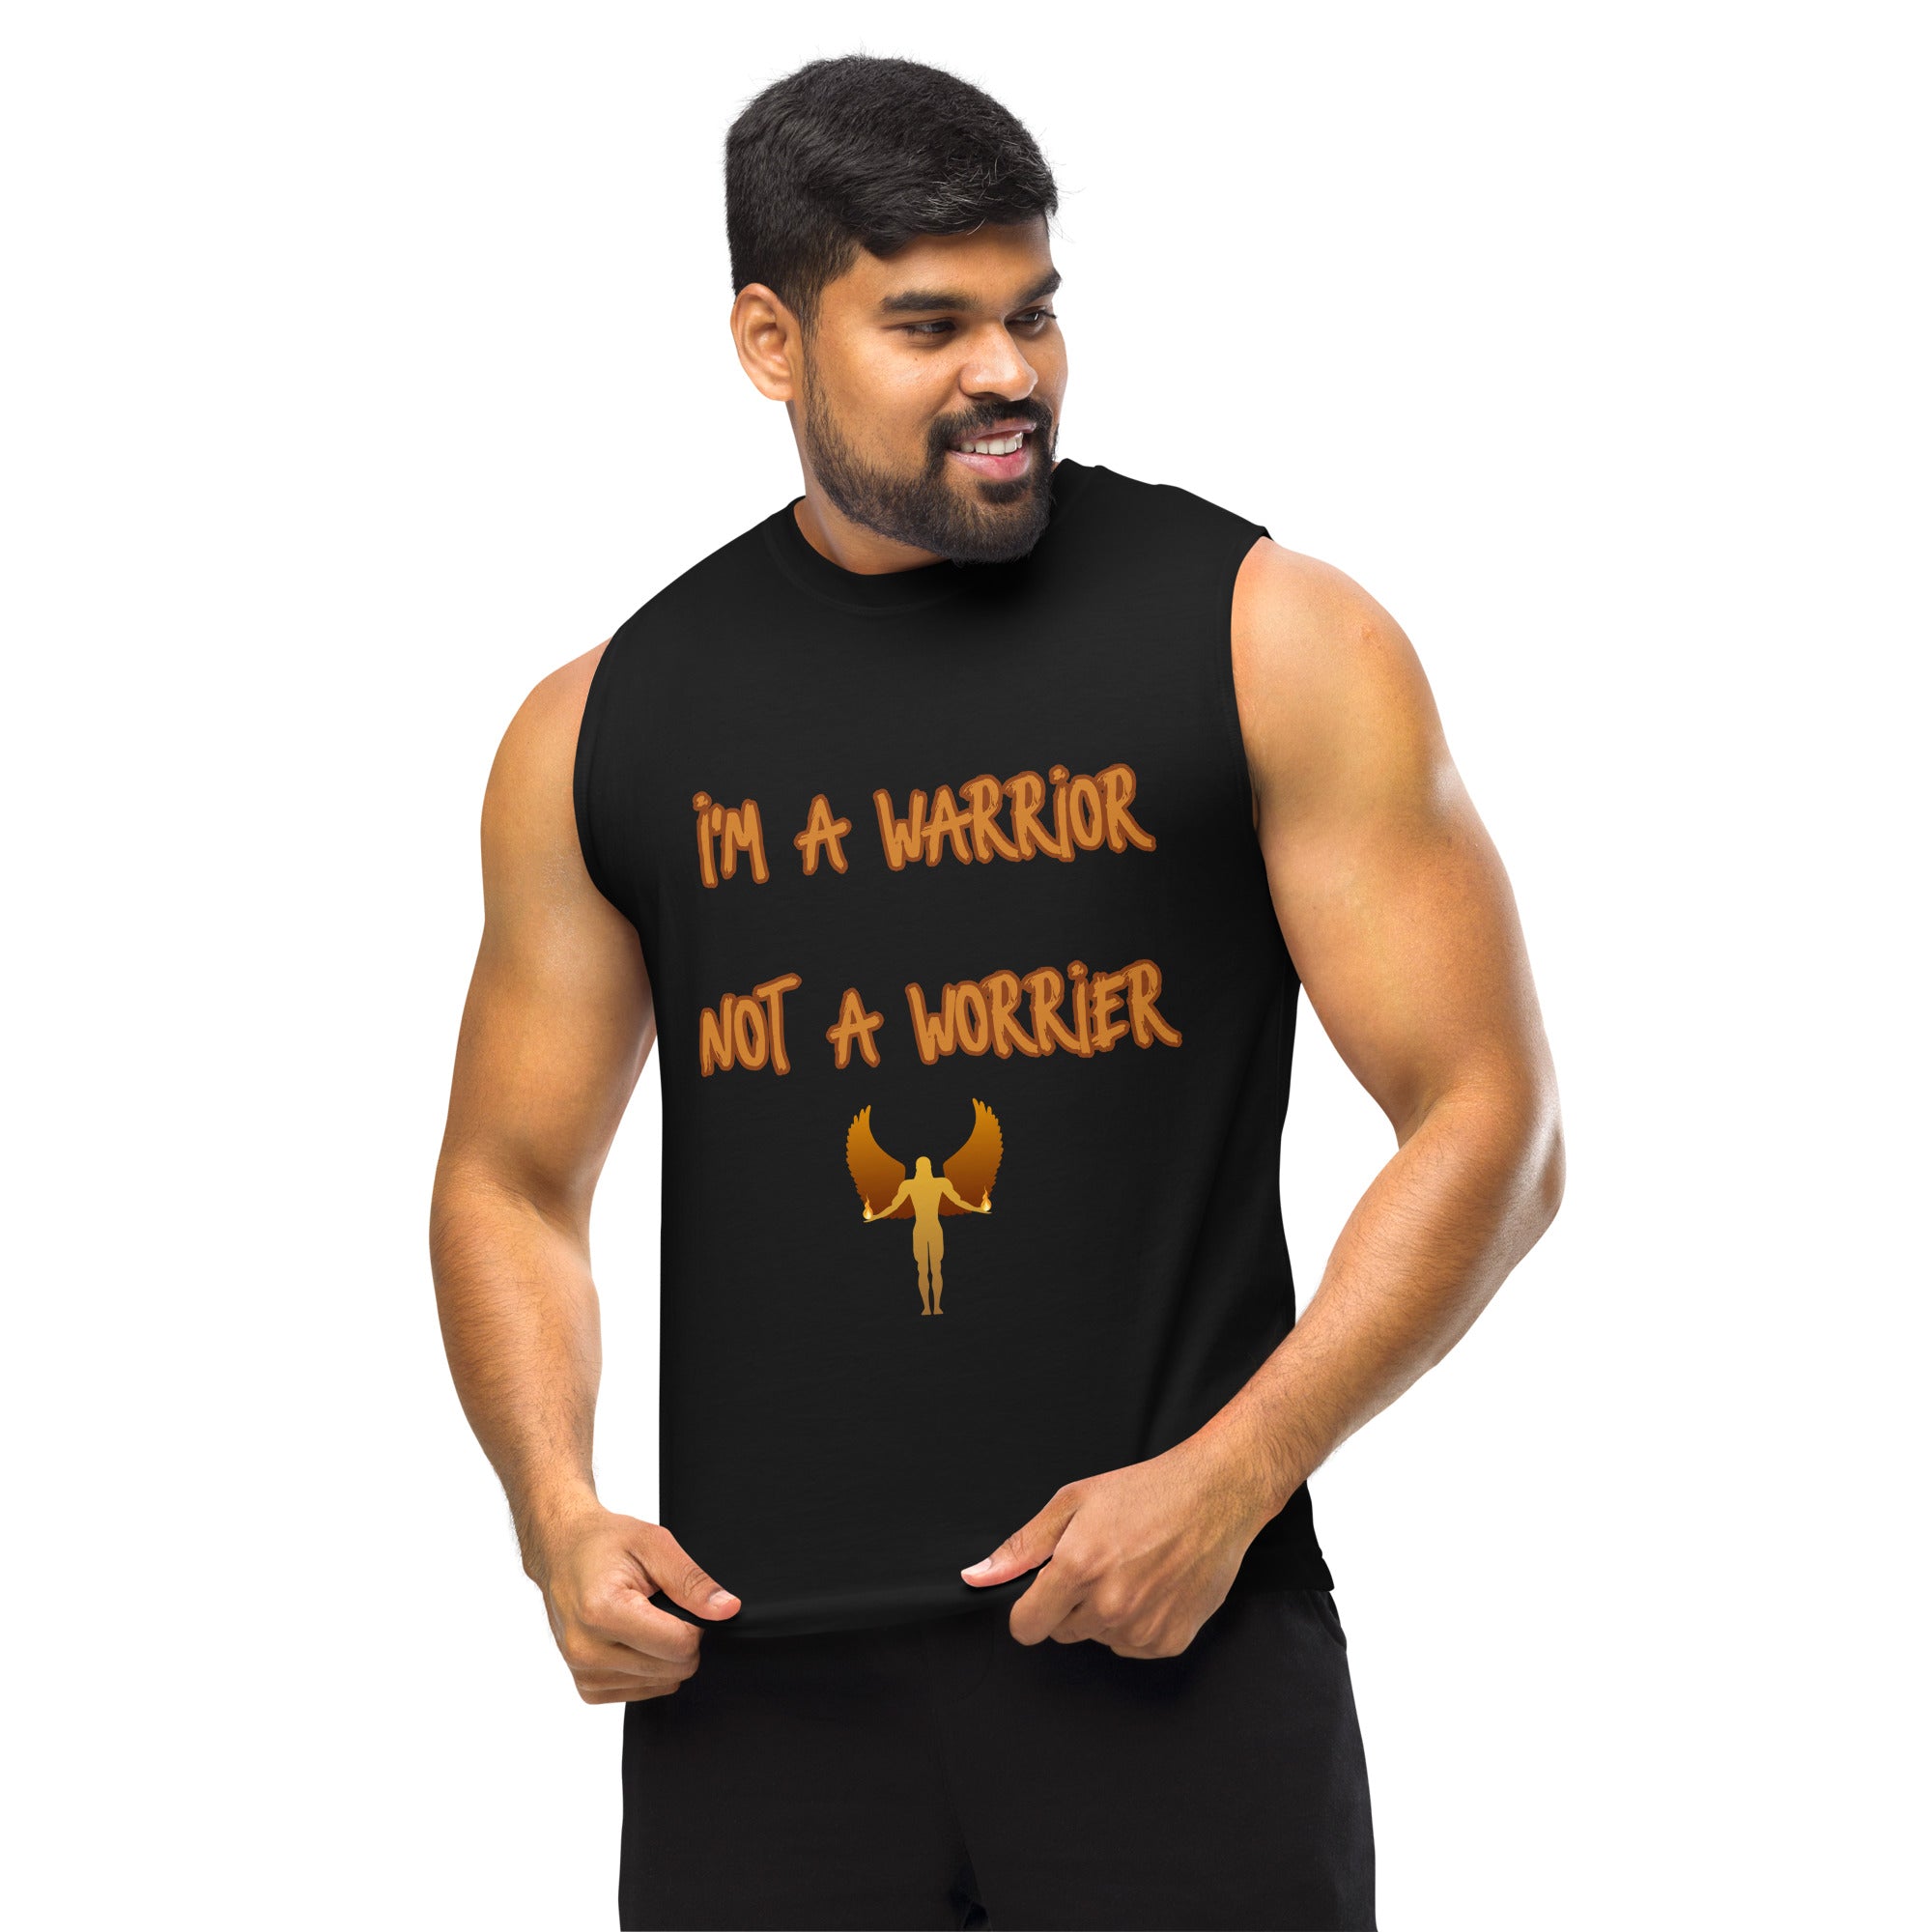 I'm a Warrior, Not a Worrier - Muscle Shirt